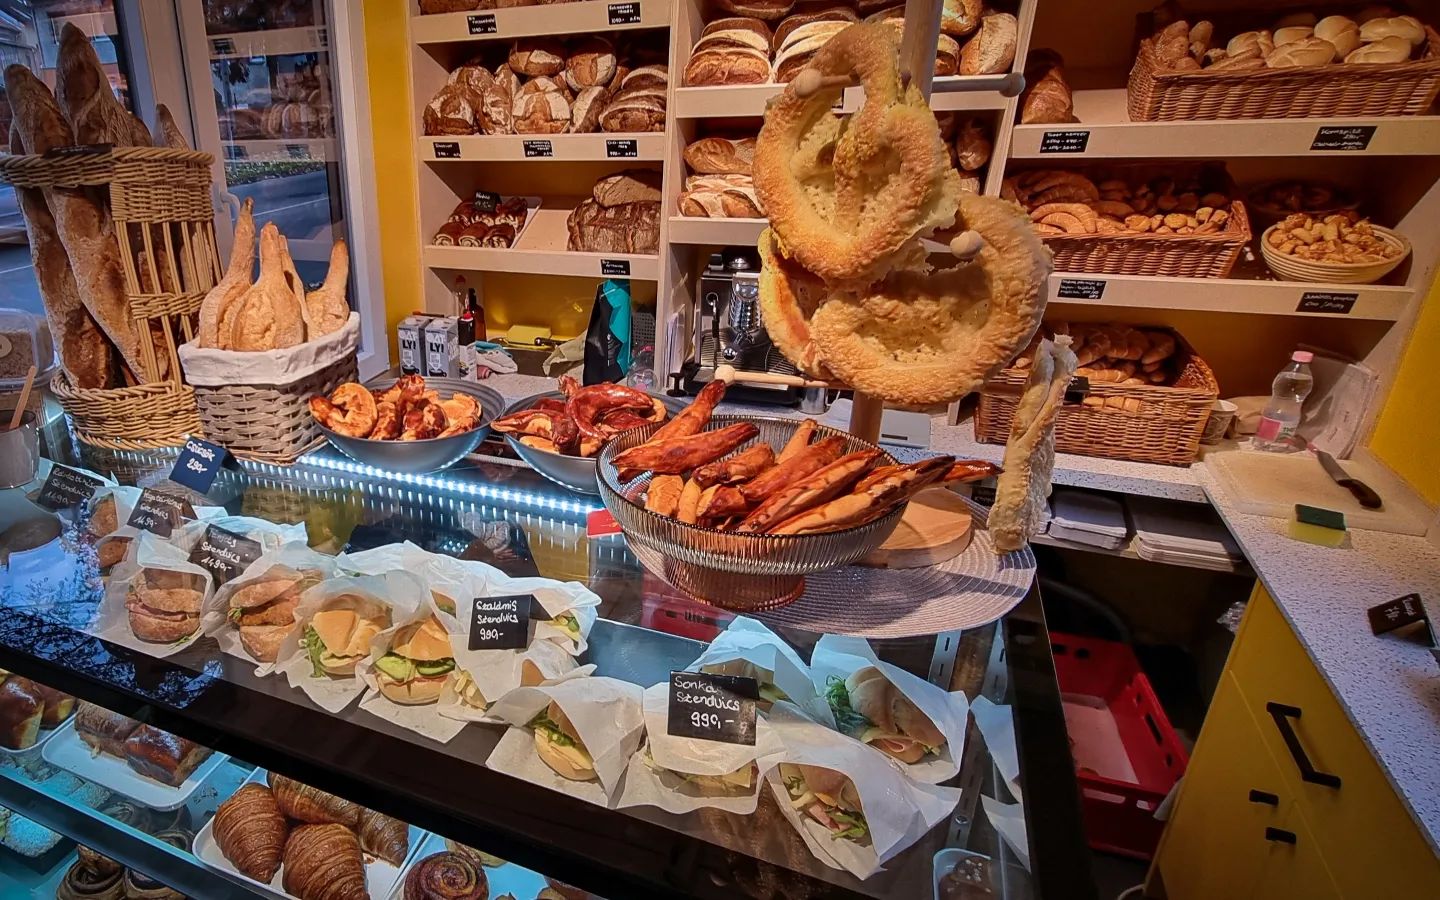 面包店, Hungary, Hungarian, bread, consumption